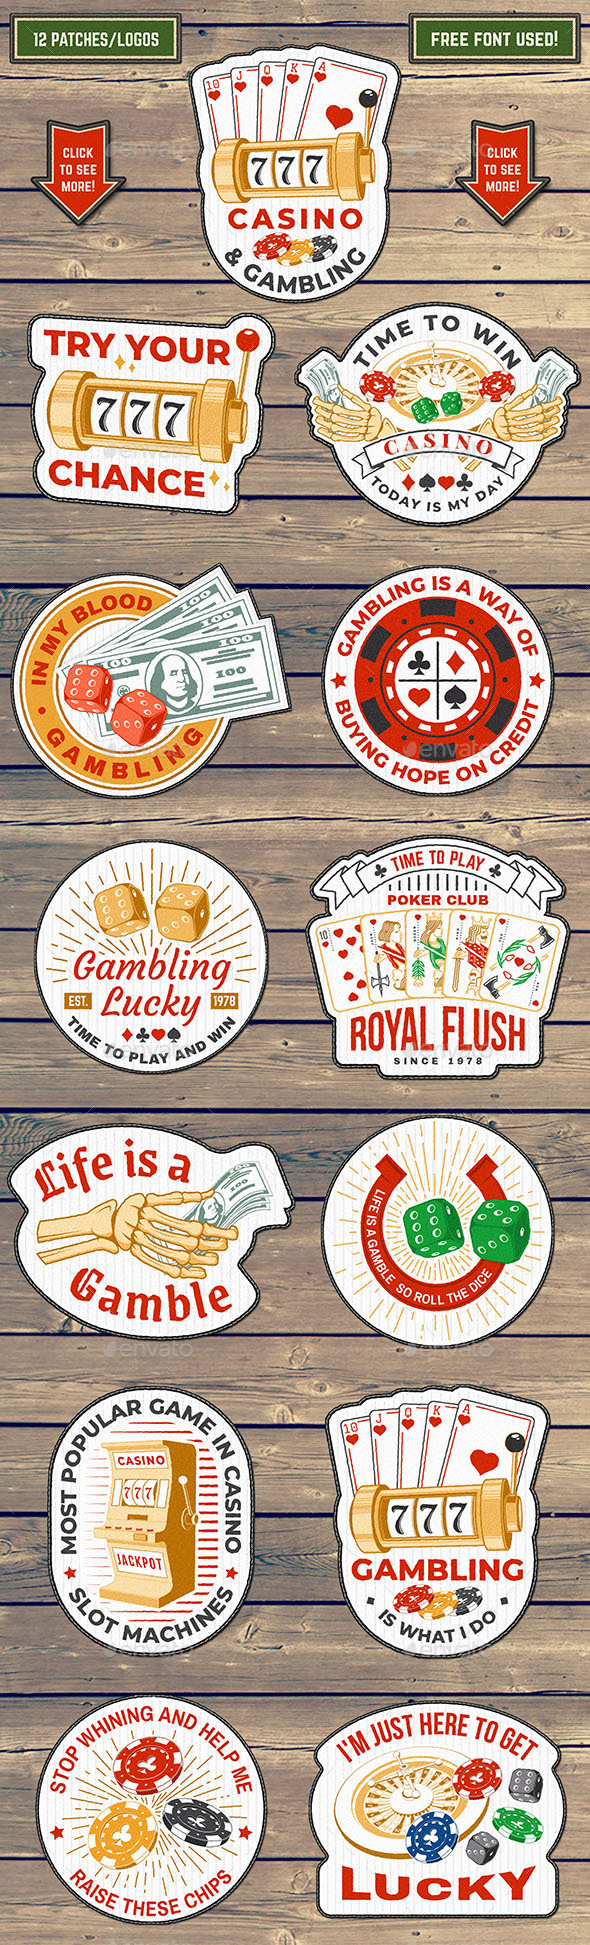 Casino and Gambling sticker